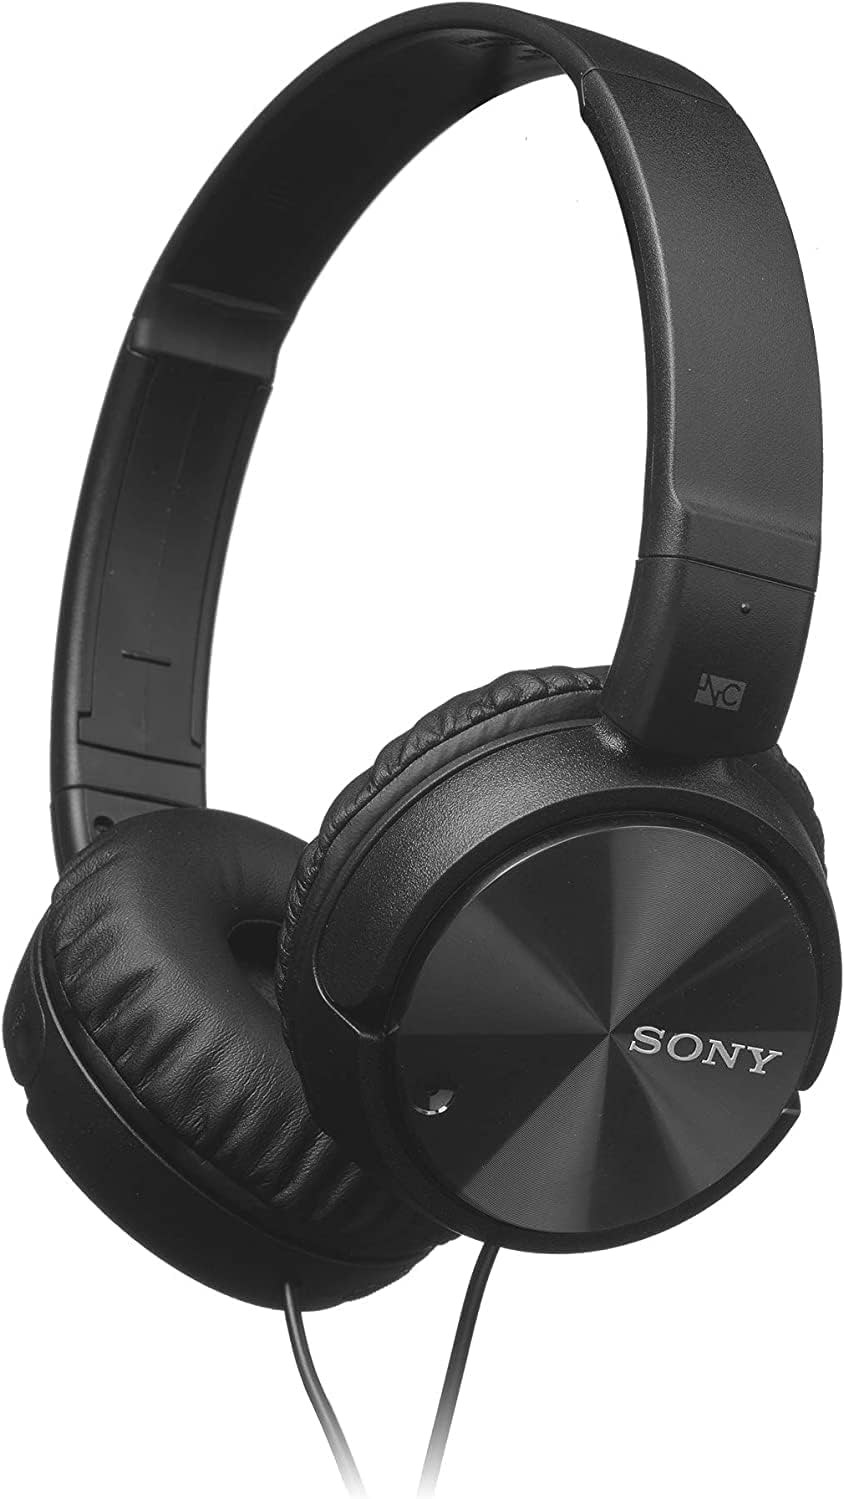 Noise-canceling headphones (Credit: Amazon)